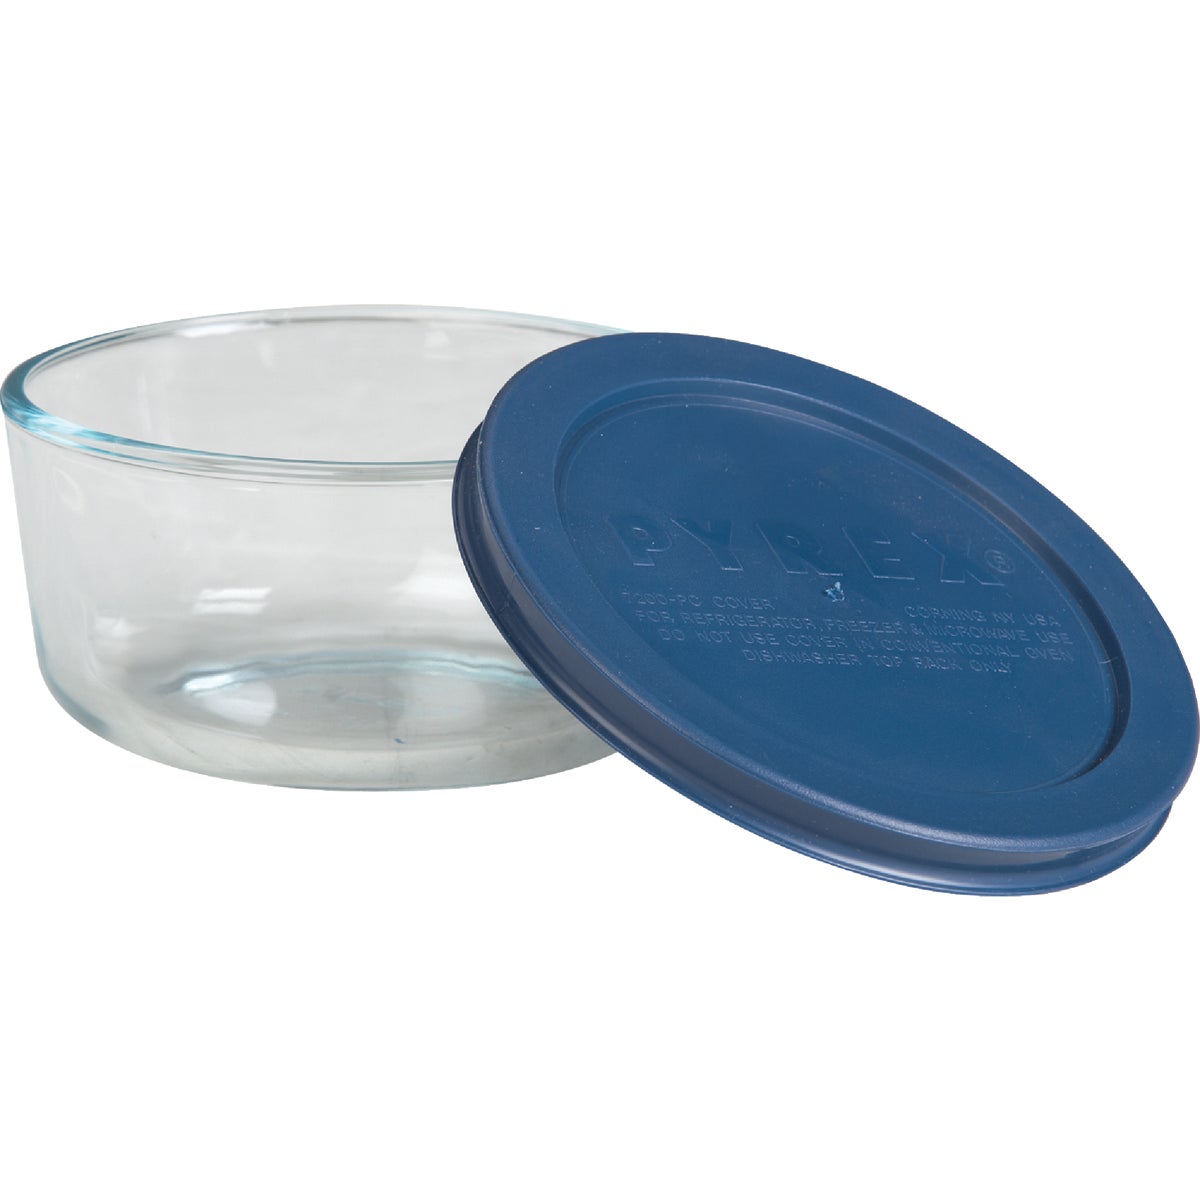 Pyrex Round Storage Dish, 2 Cup